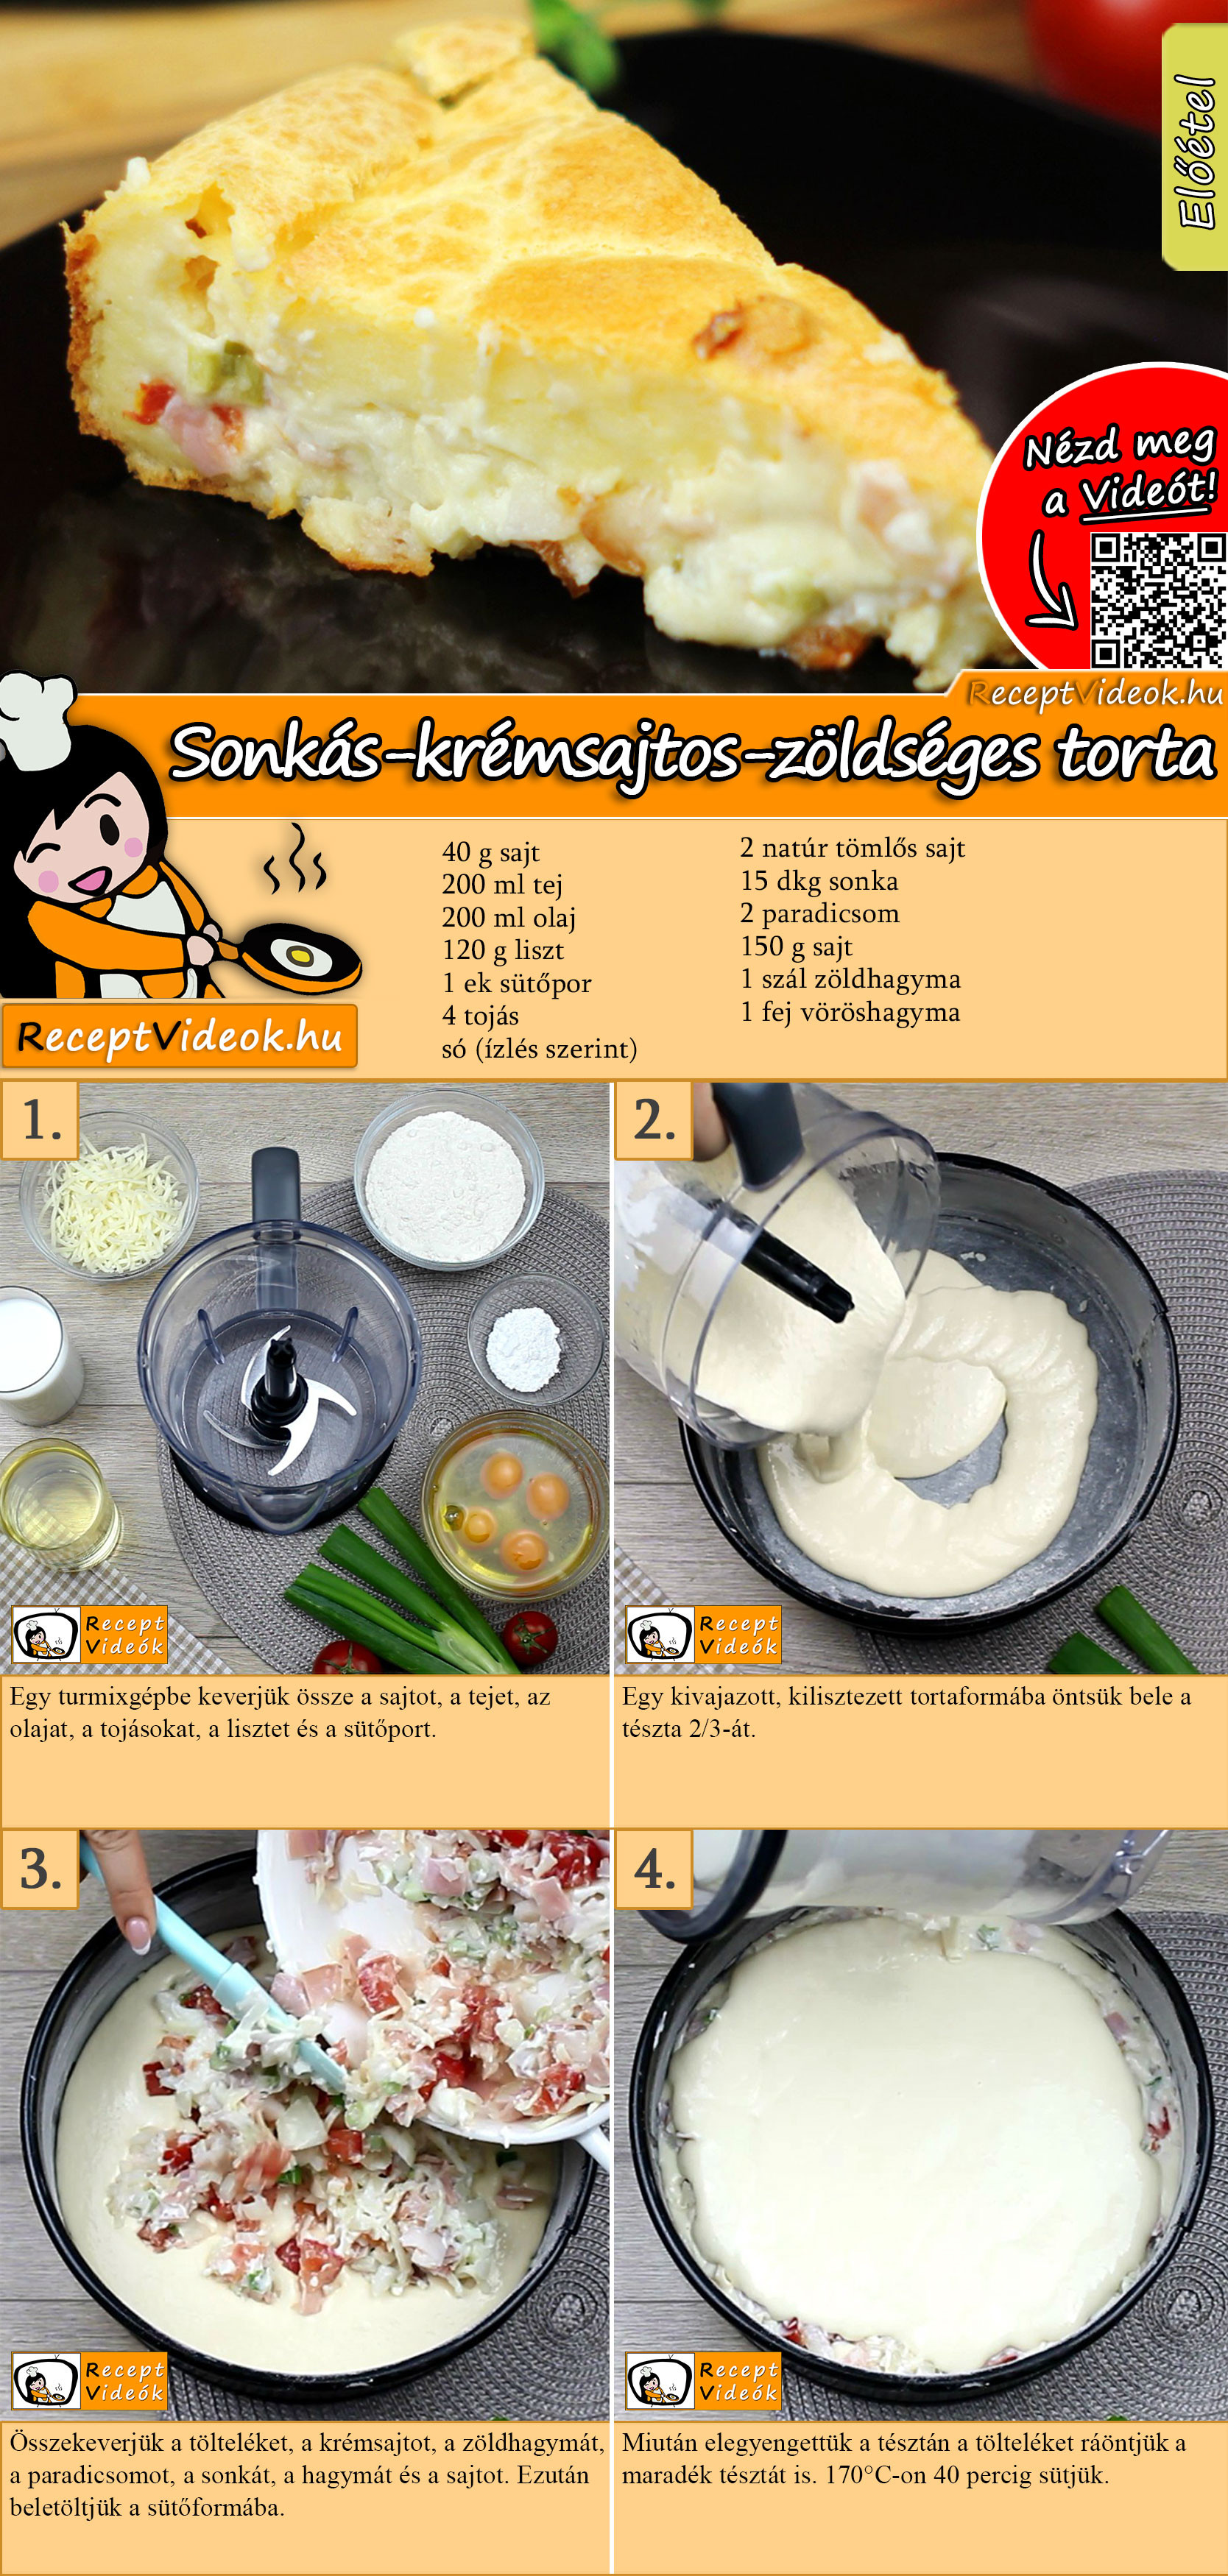 Sonkás-krémsajtos-zöldséges torta recept elkészítése videóval